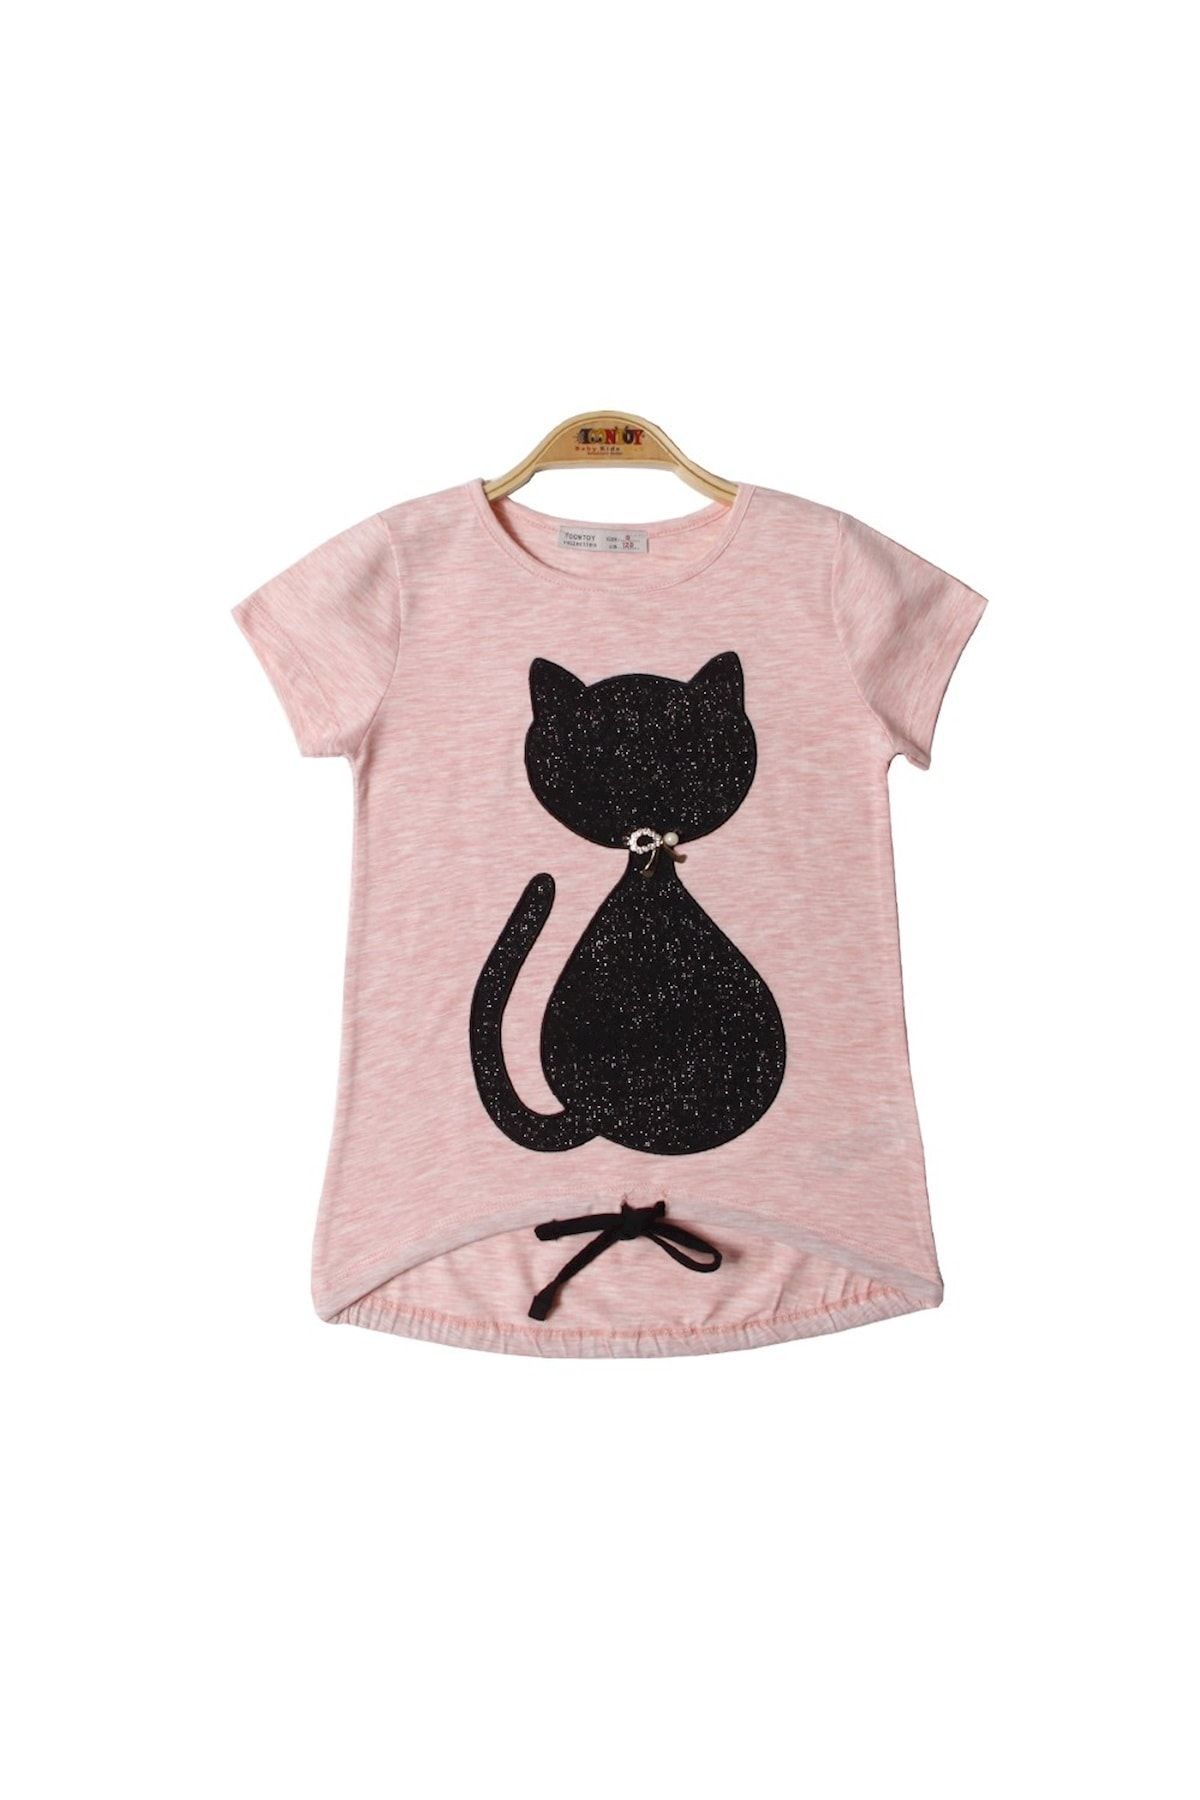 Toontoy Kız Çocuk Kedi Nakışlı Tişört Pembe Melanj 12 Yaş K-271